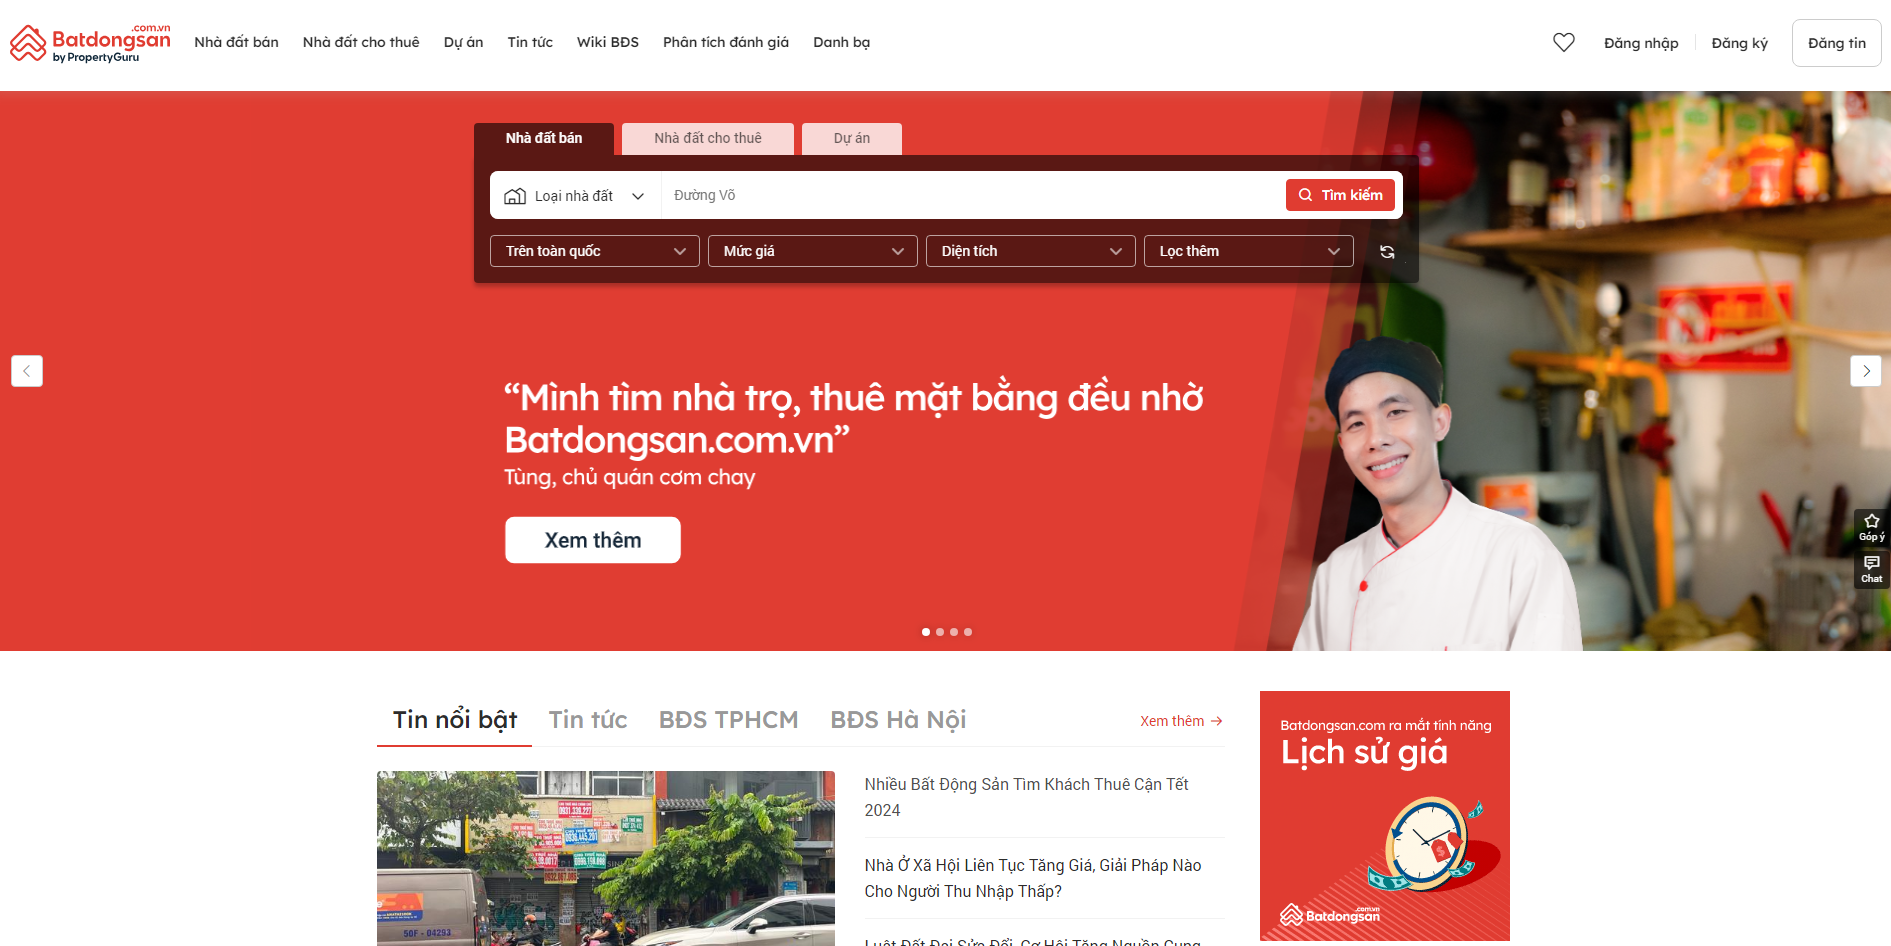 Thiết kế website bất động sản như Batdongsan.com.vn